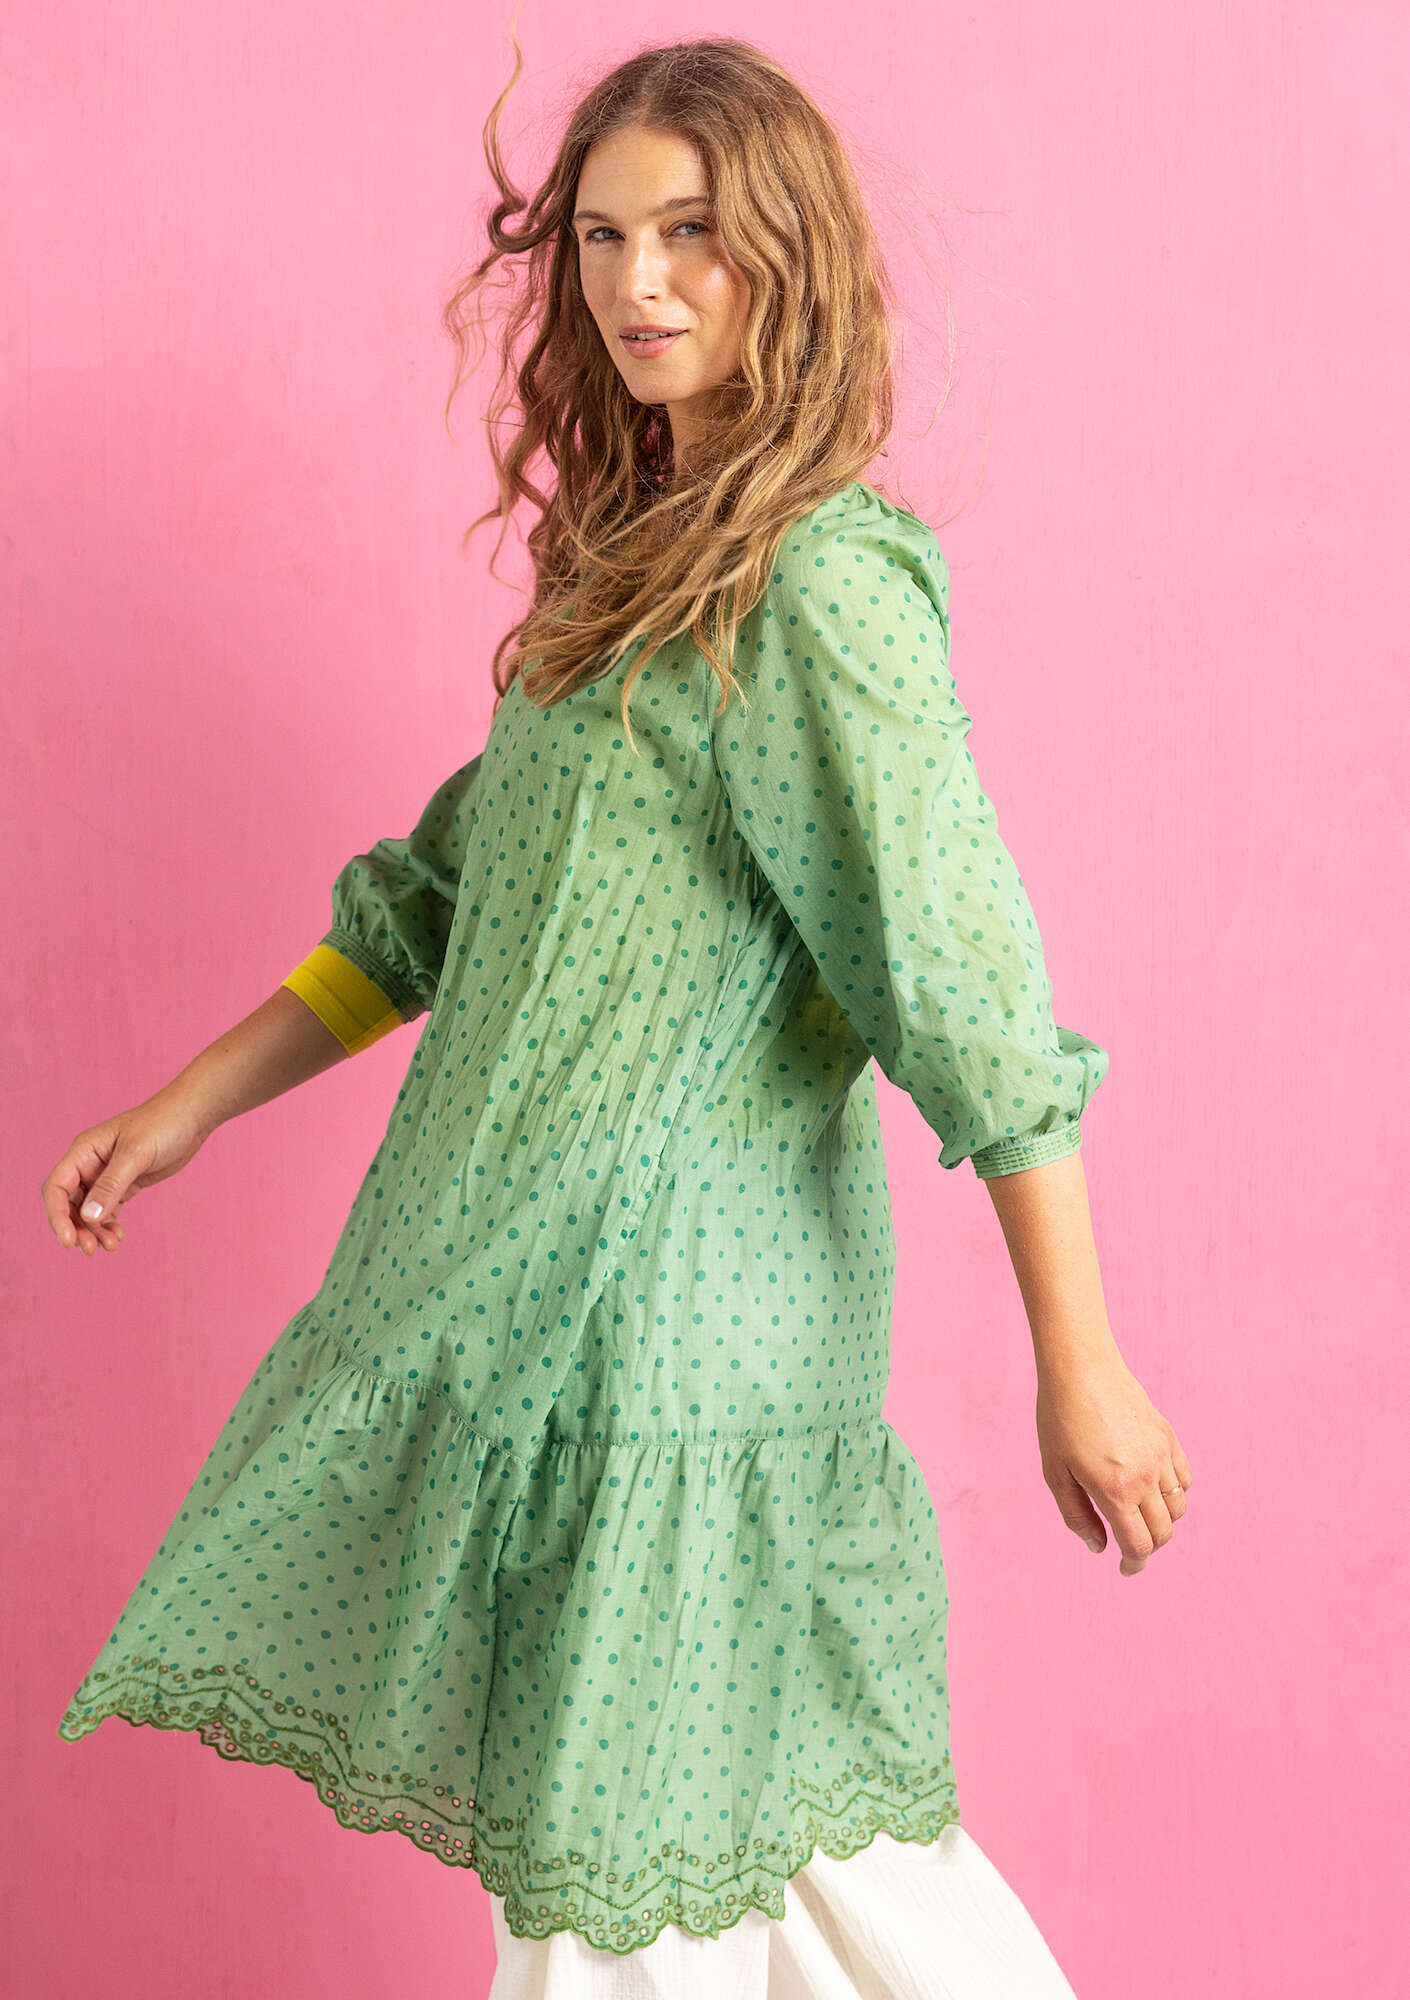 Vevd kjole «Lilly» i økologisk bomull dus grønn thumbnail